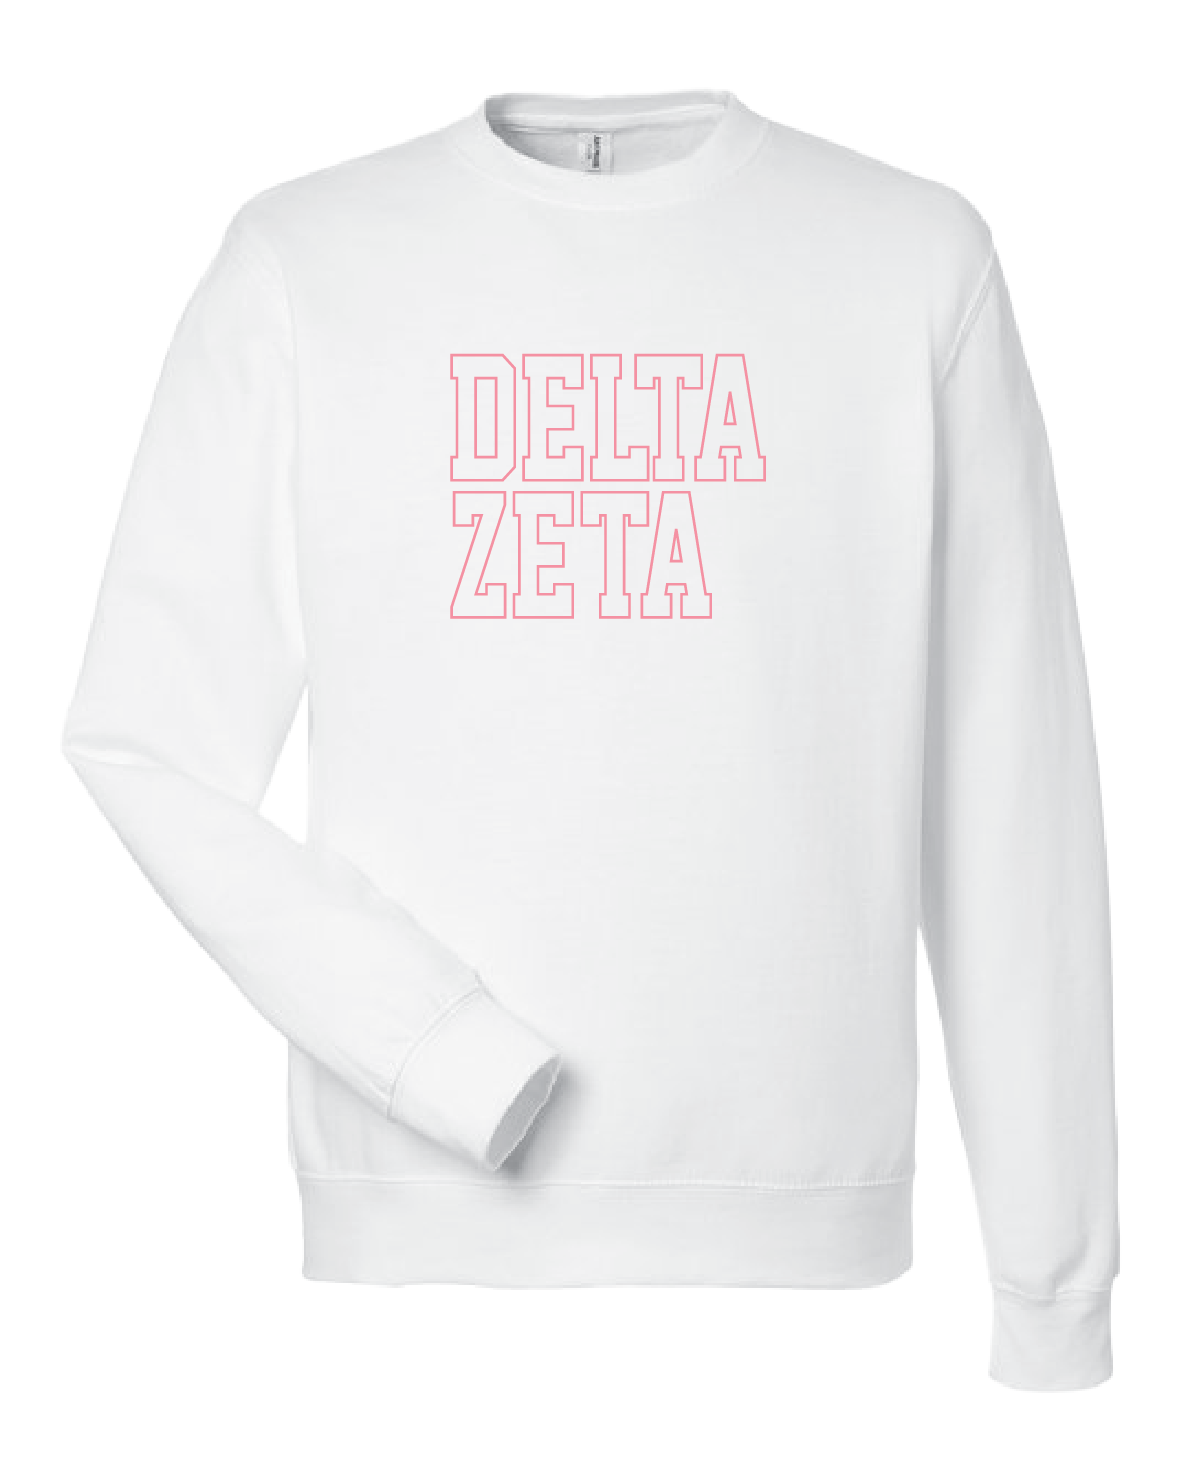 WS - Delta Zeta Block Crewneck (min qty 6) $32 / $70